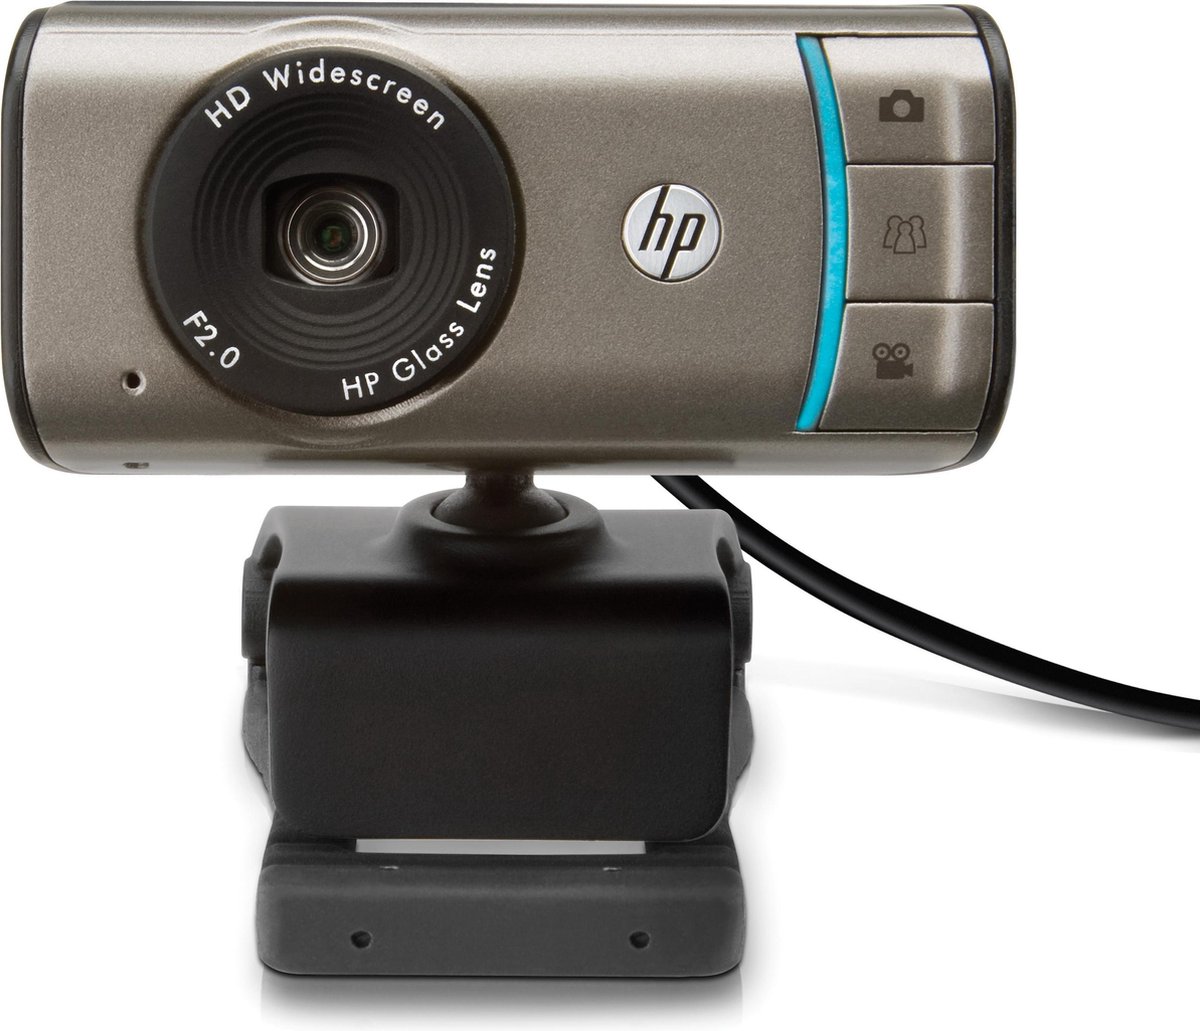 hp webcam 3110 software download